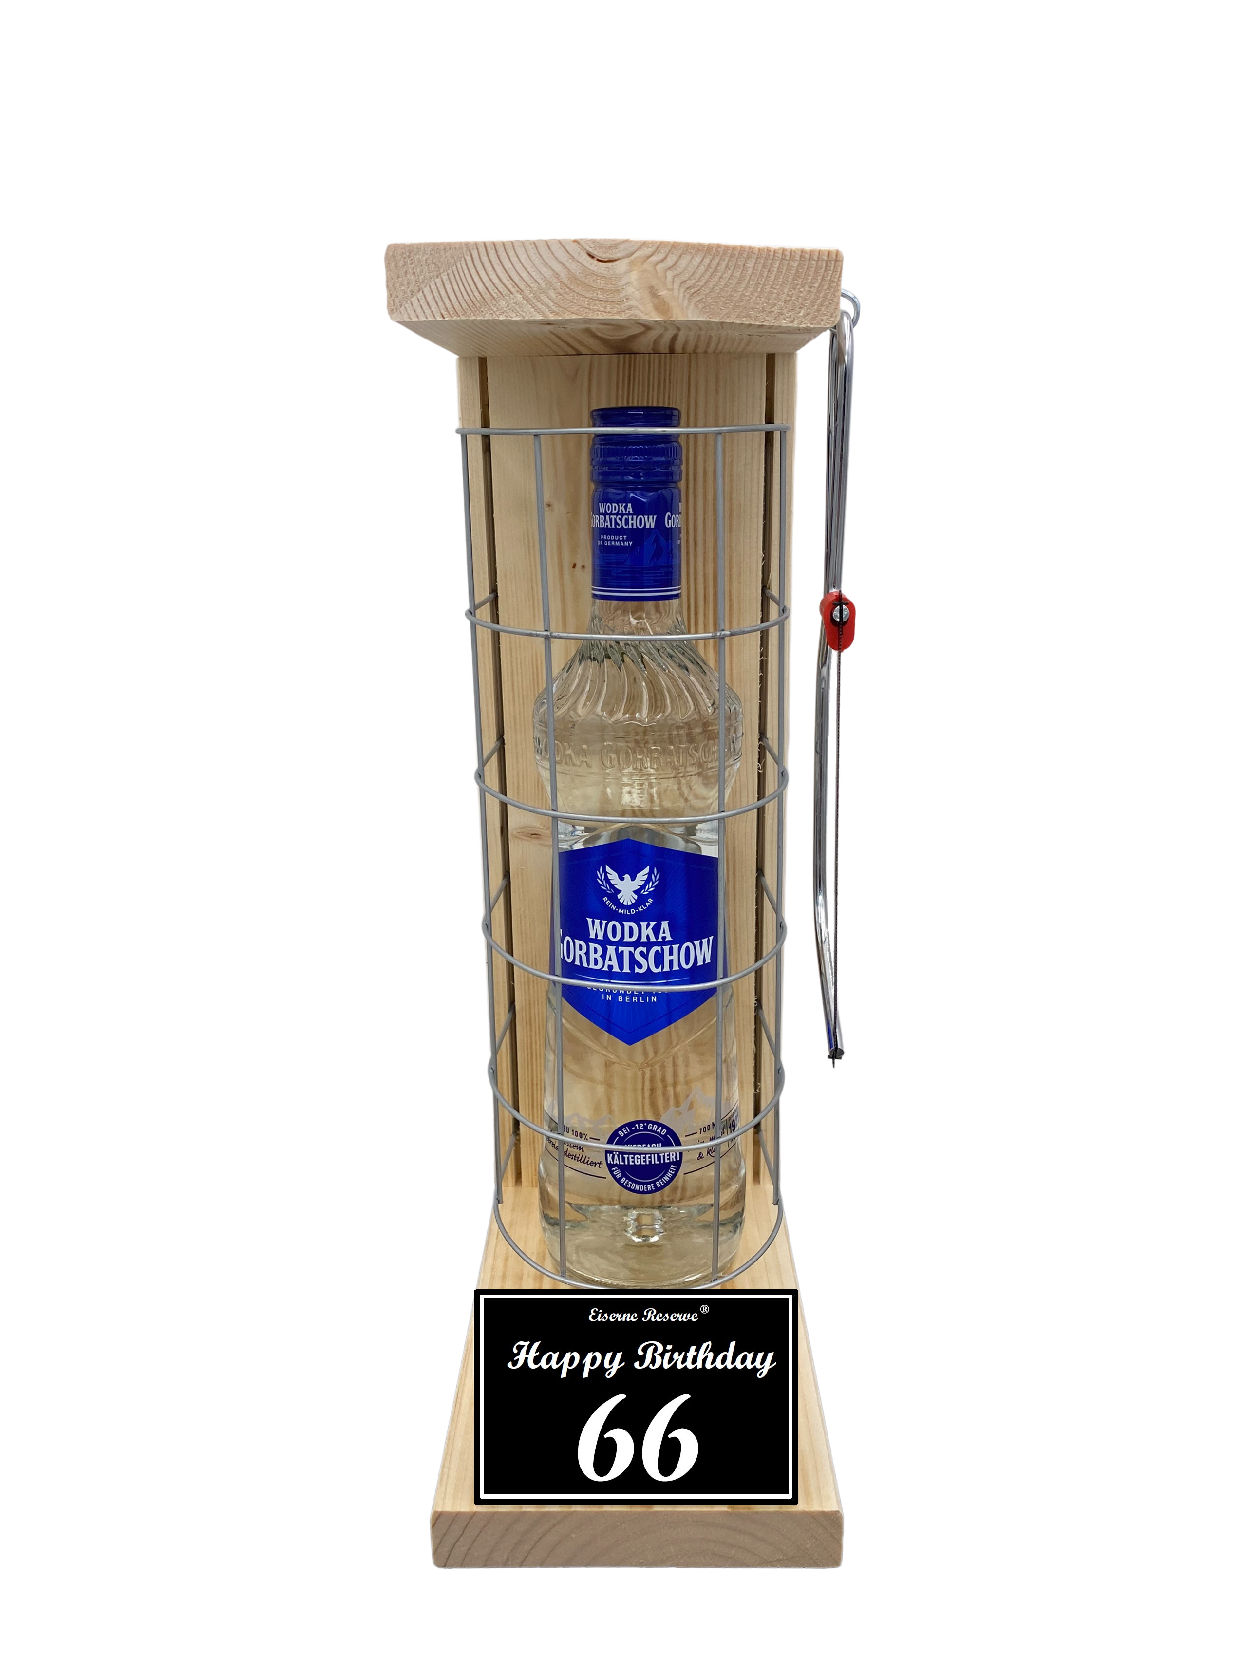 Wodka Geschenk zum 66 Geburtstag - Eiserne Reserve Gitterkäfig